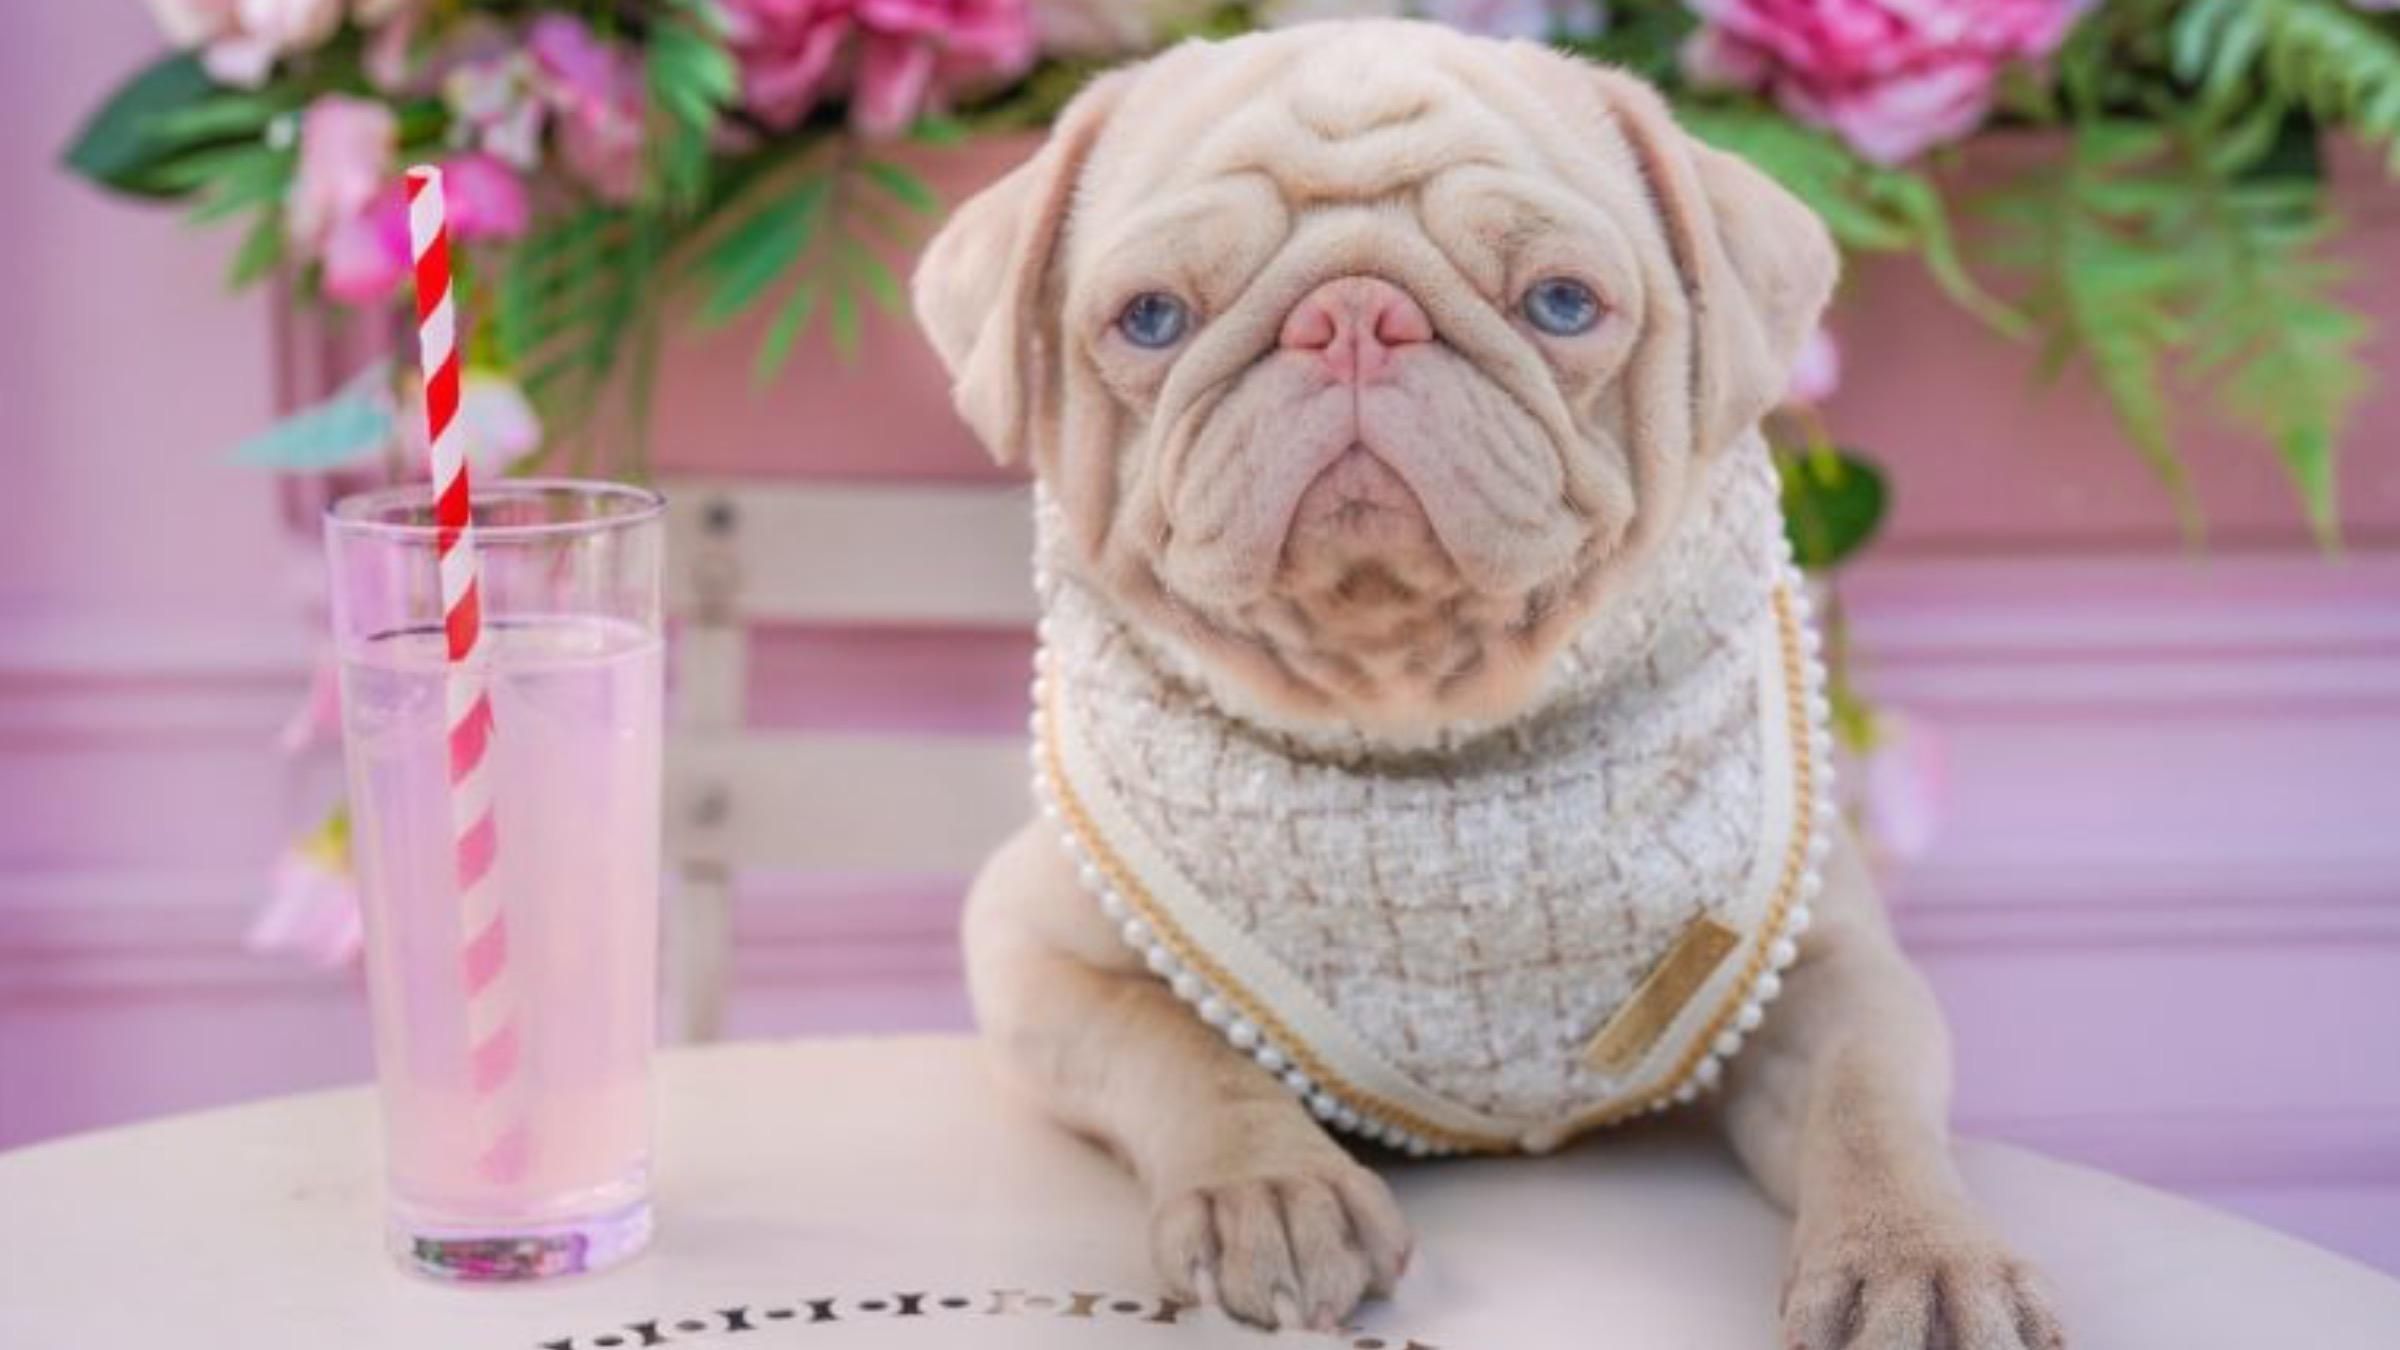 Шерсть с розовым оттенком и голубые глаза: фото мопса, покорившего соцсети - Pets